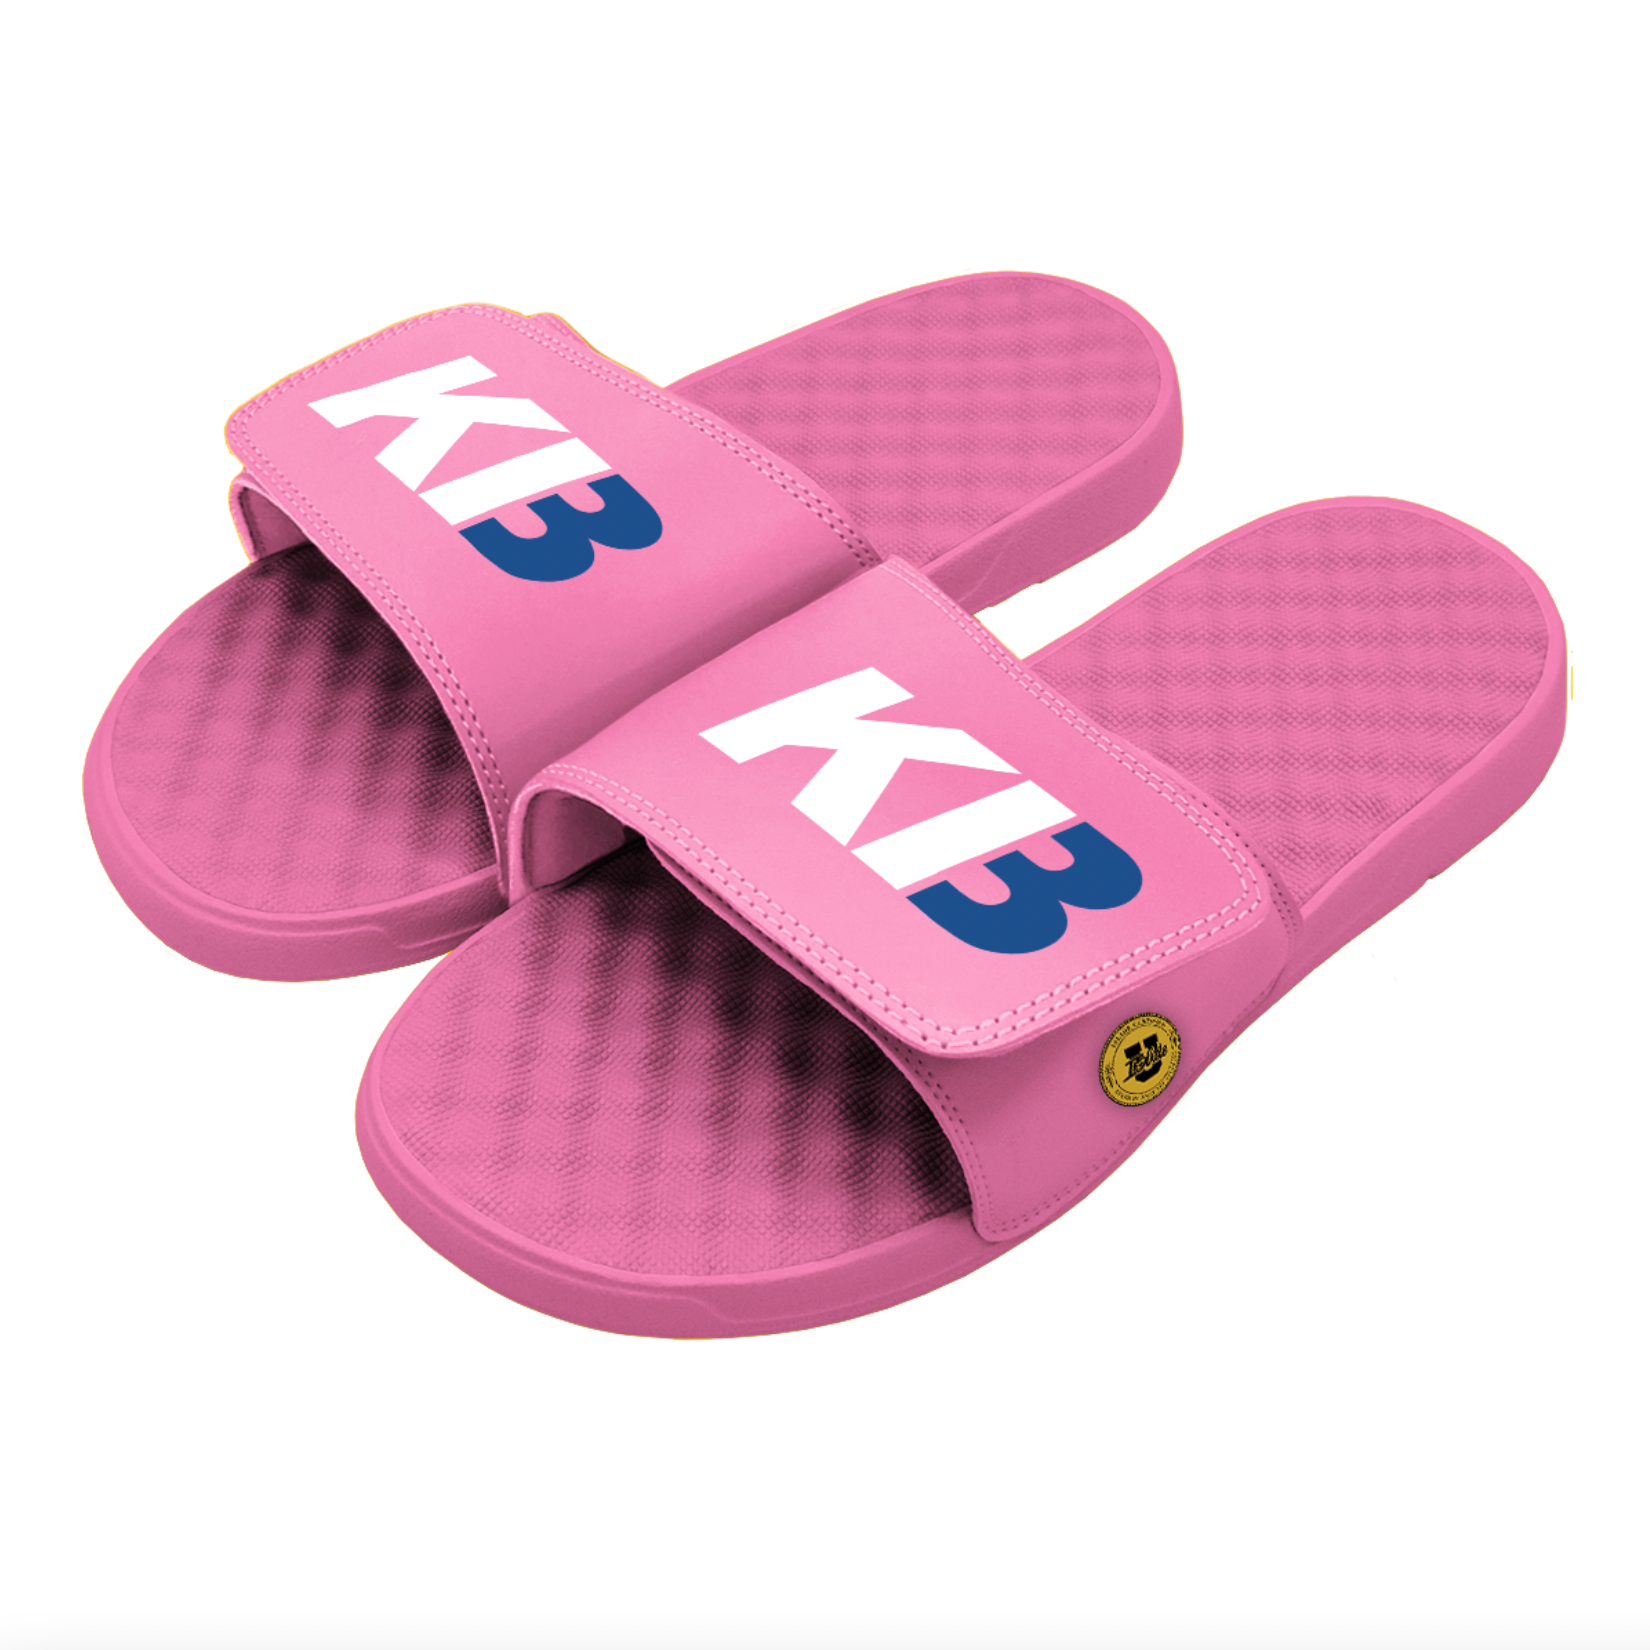 KB3 Pink Slides